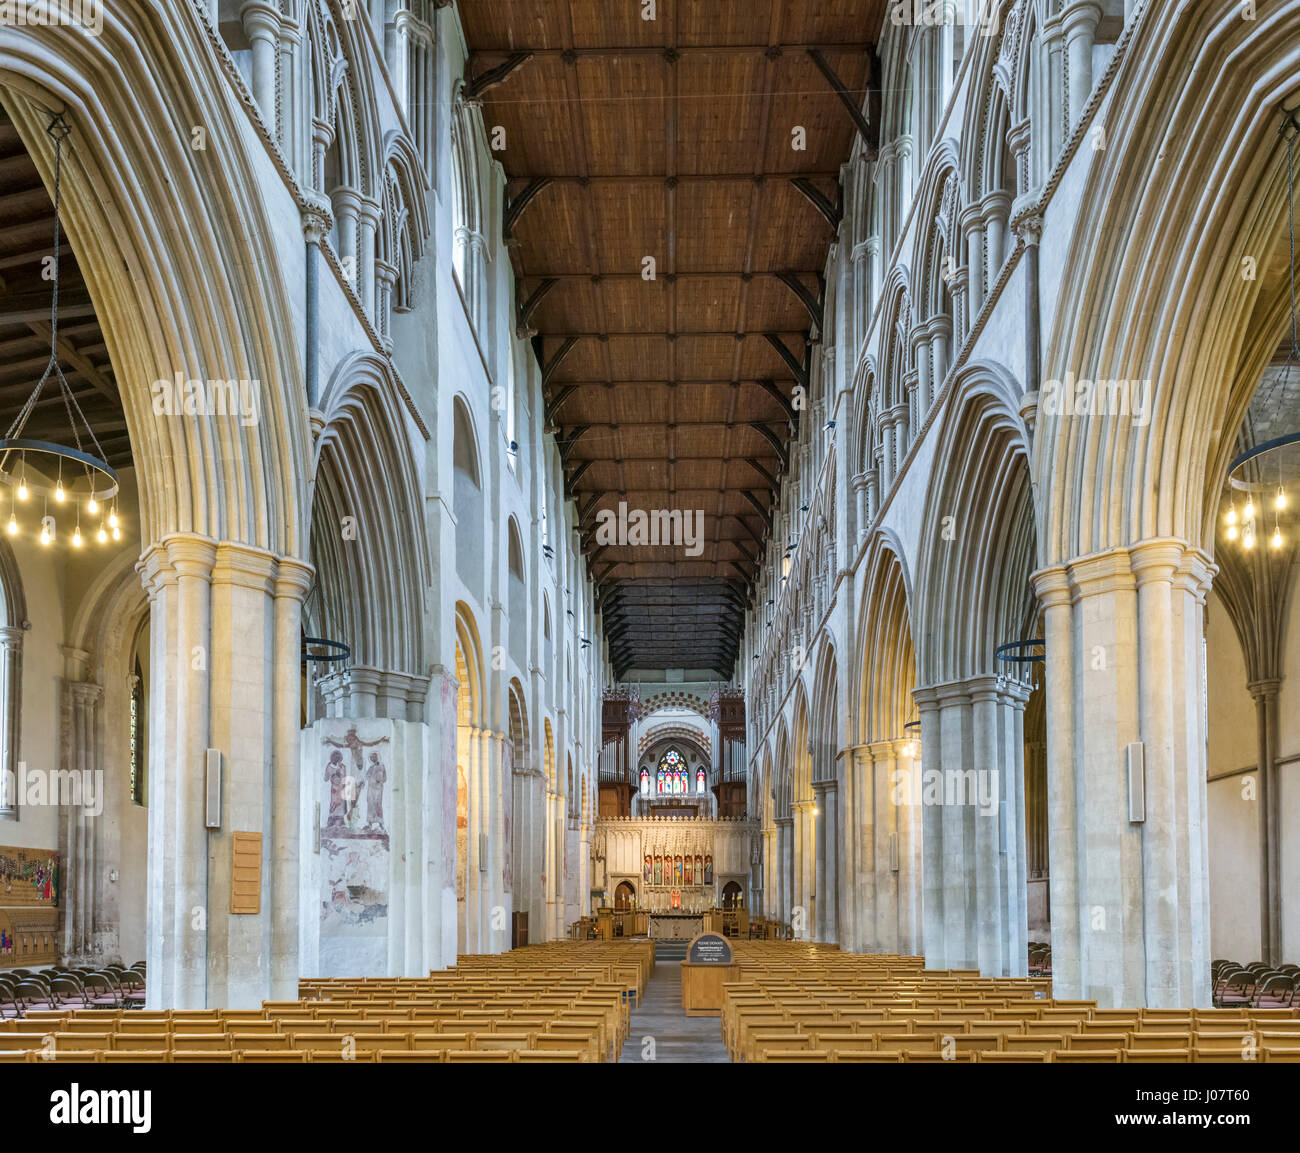 La Cathédrale de St Albans. Nef de la cathédrale et l'église abbatiale de St Alban, St Albans, Hertfordshire, England, UK Banque D'Images